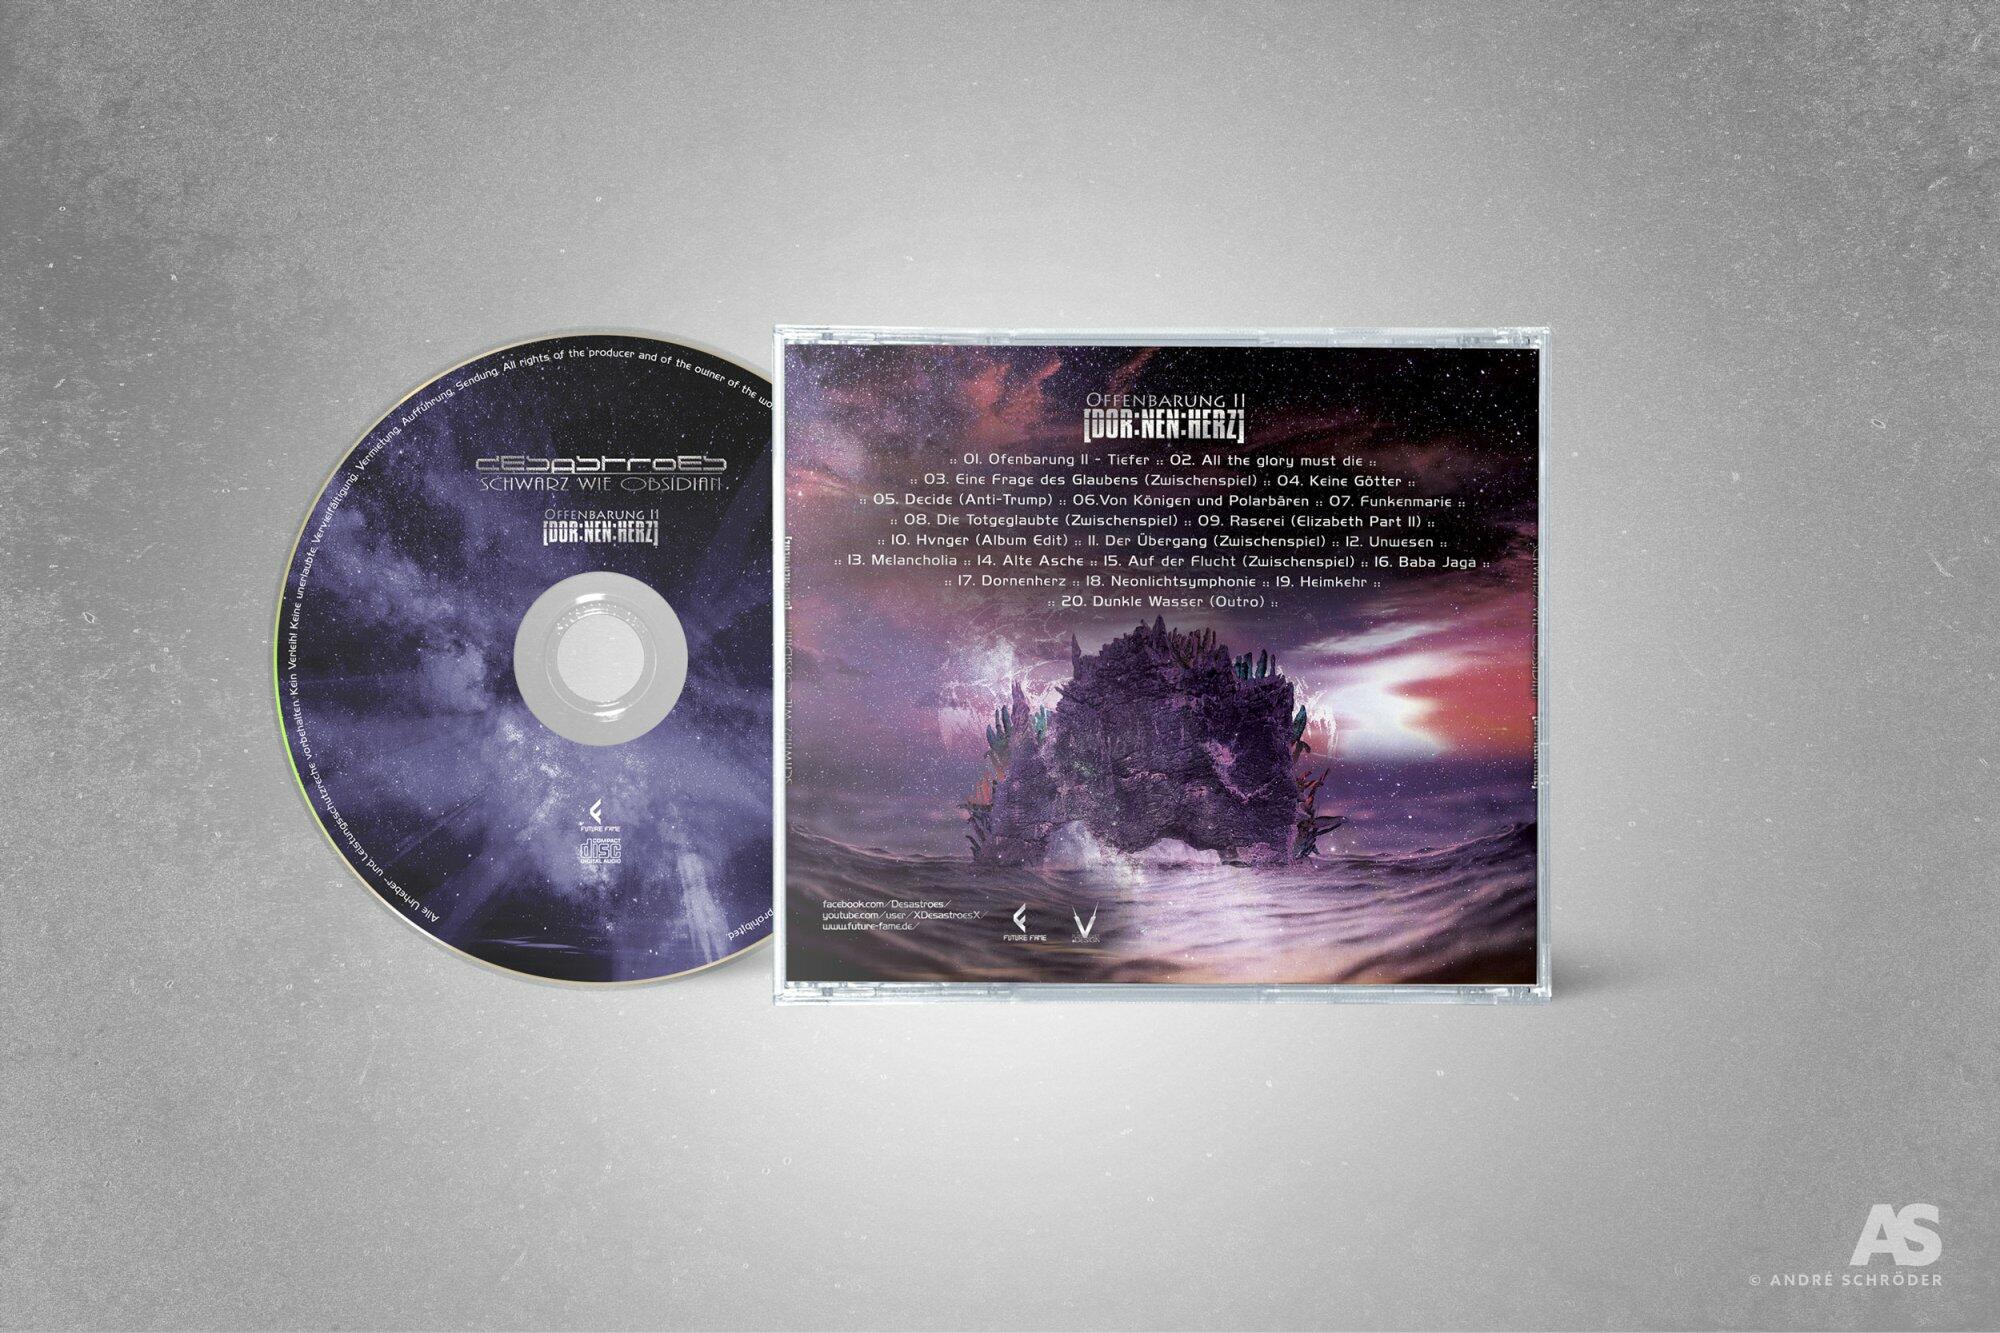 desastroes - Dornenherz - CD Jewel Case Mockup 08